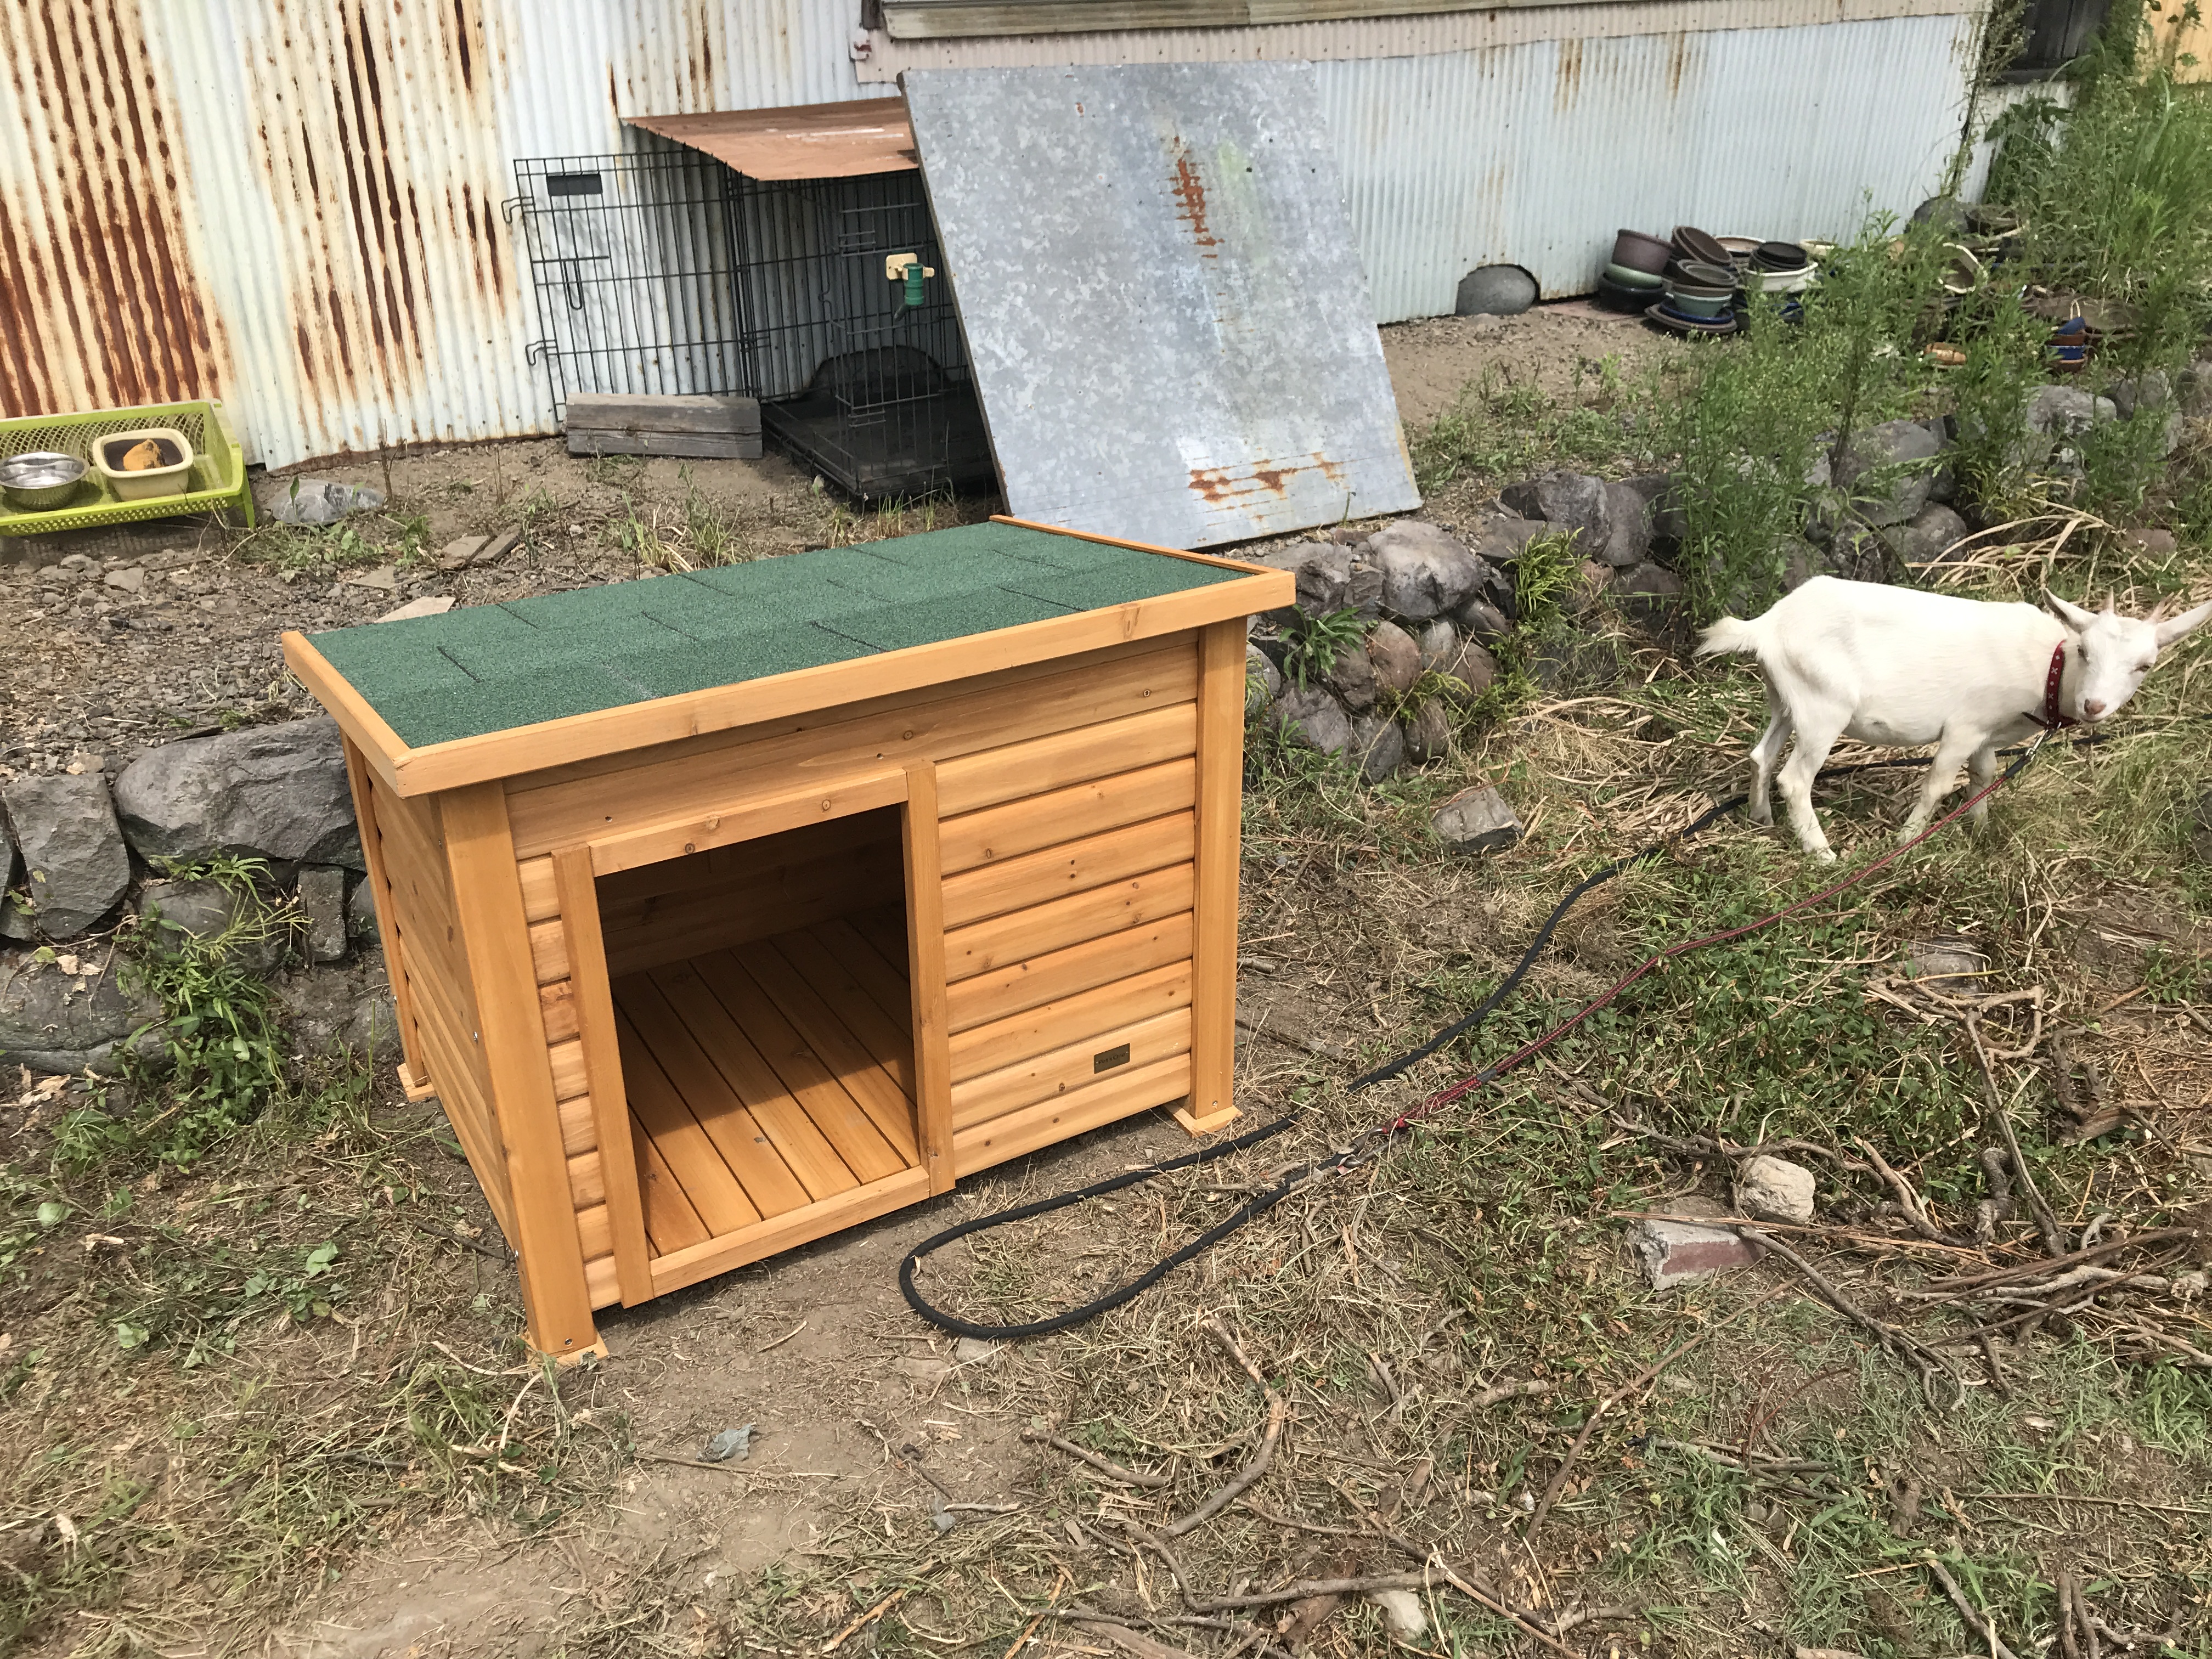 ヤギ小屋に代用 カインズホームの中型犬用の小屋を組み立てたら簡単だった りょたろぐ